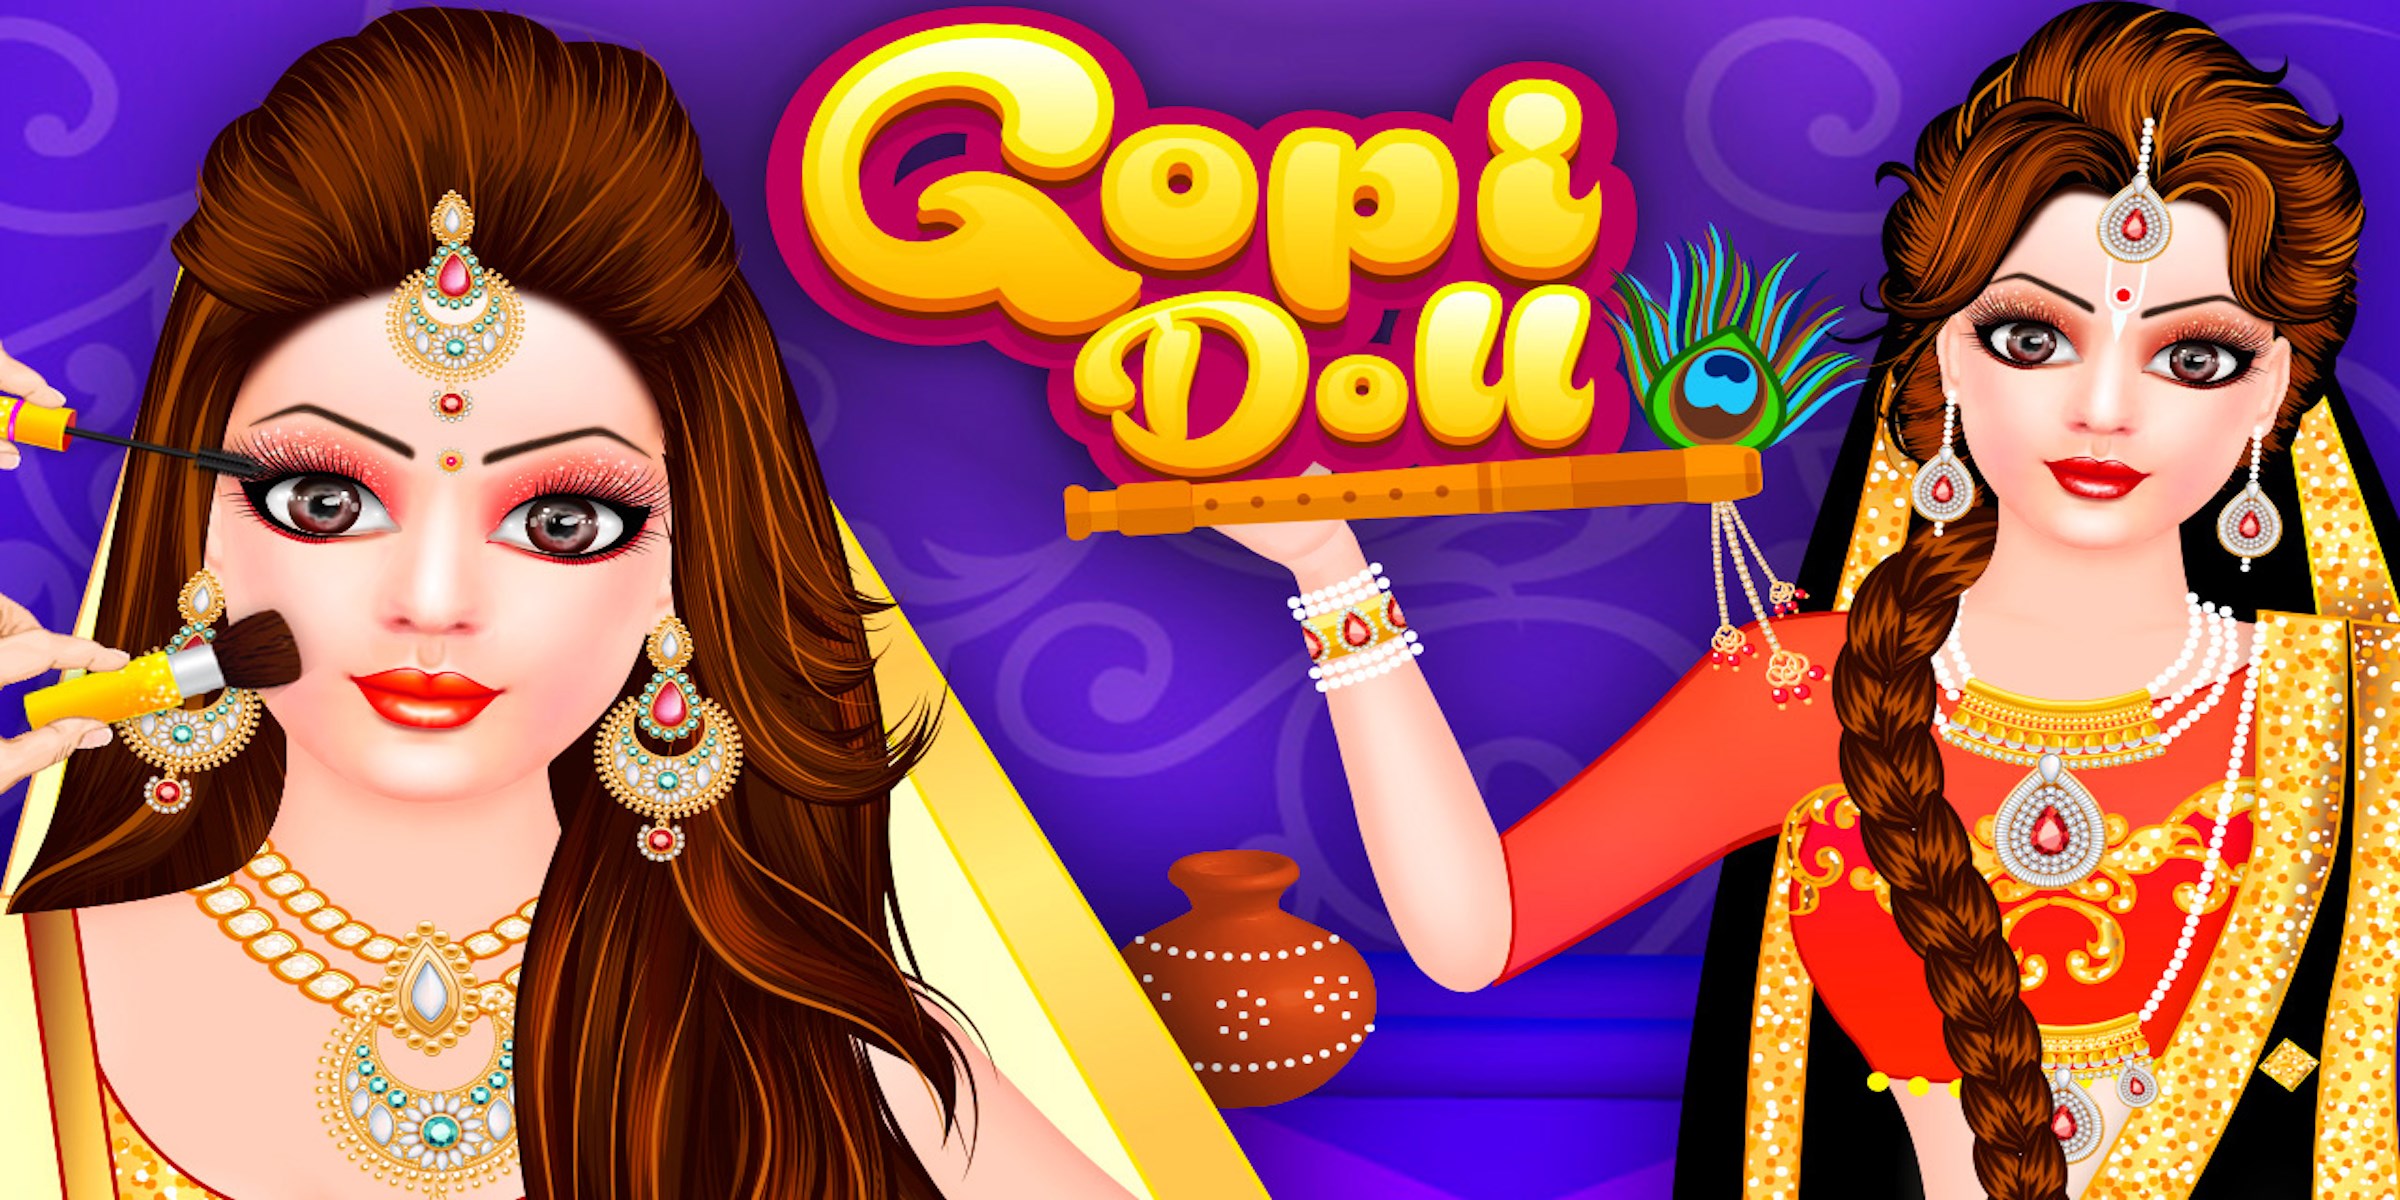 gopi doll fashion salon 2 download